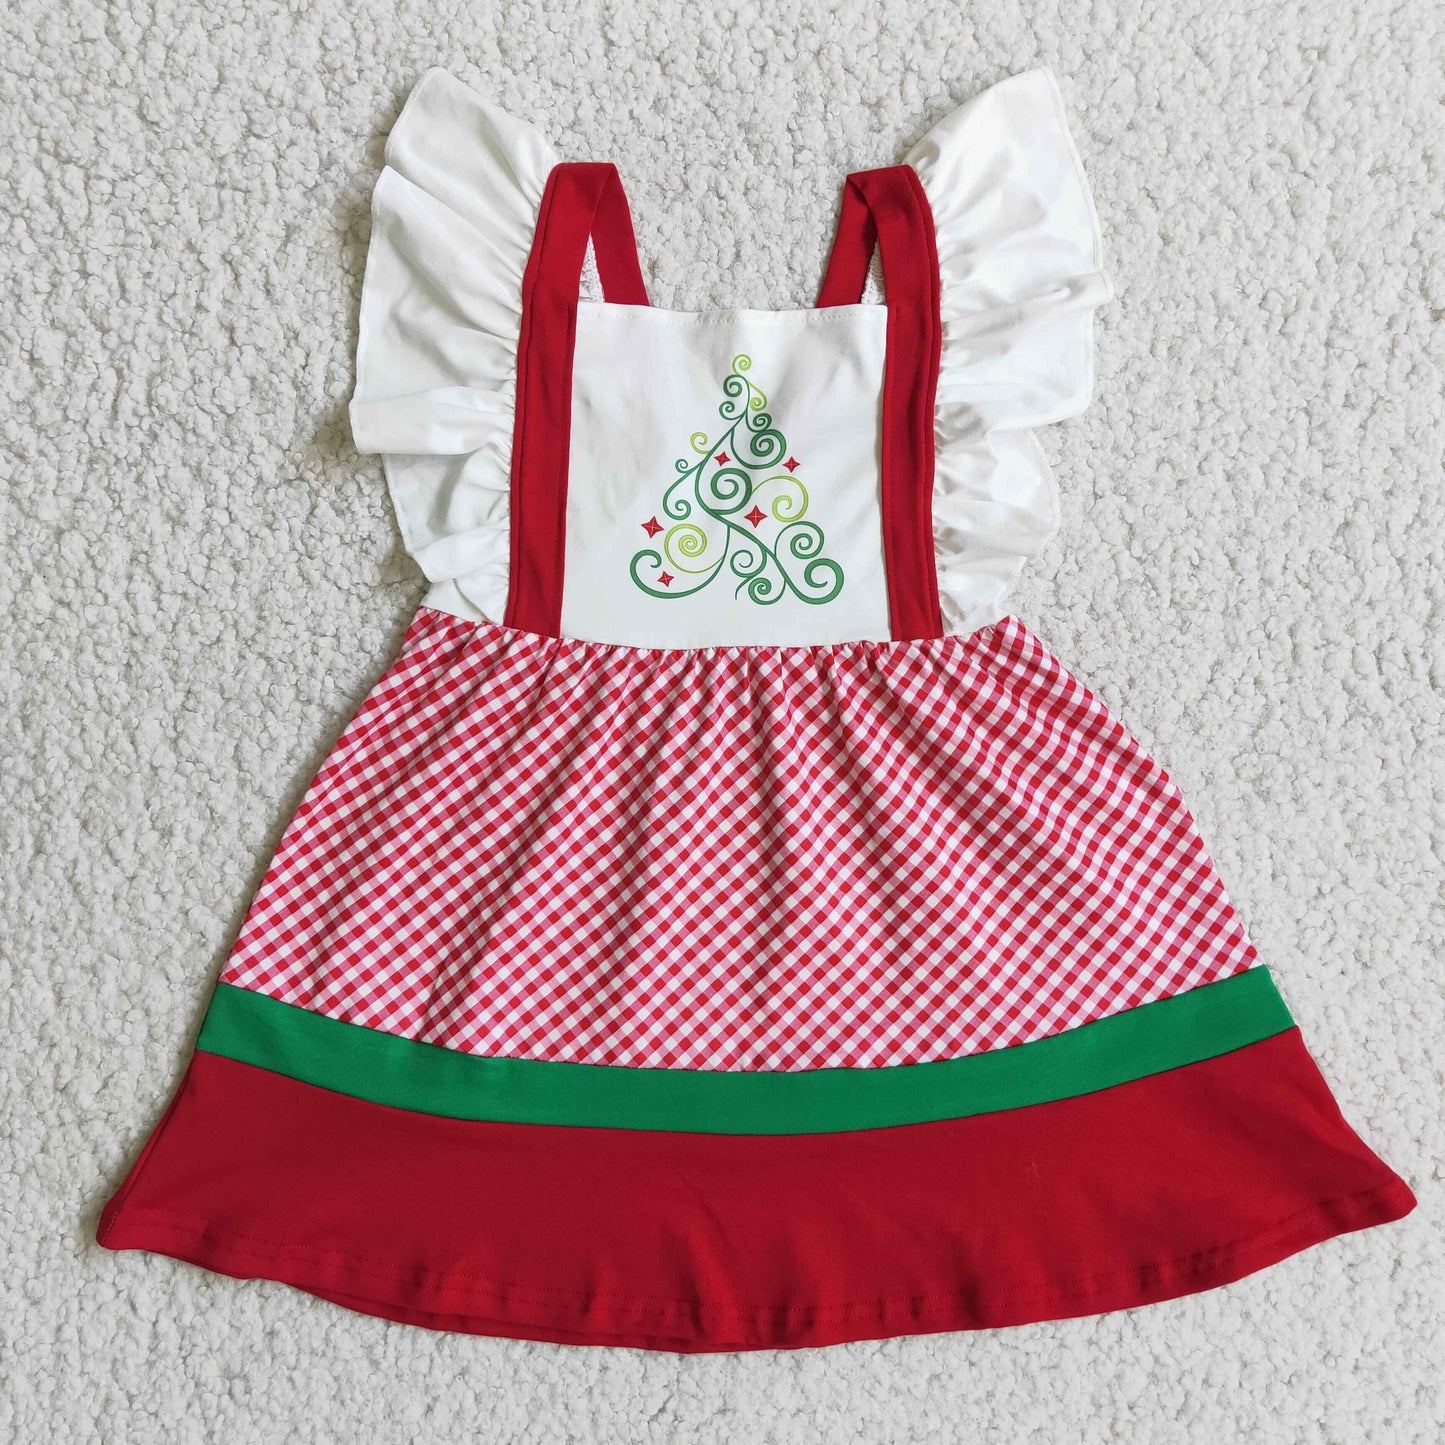 Flutter sleeve Christmas tree print baby girl dresses